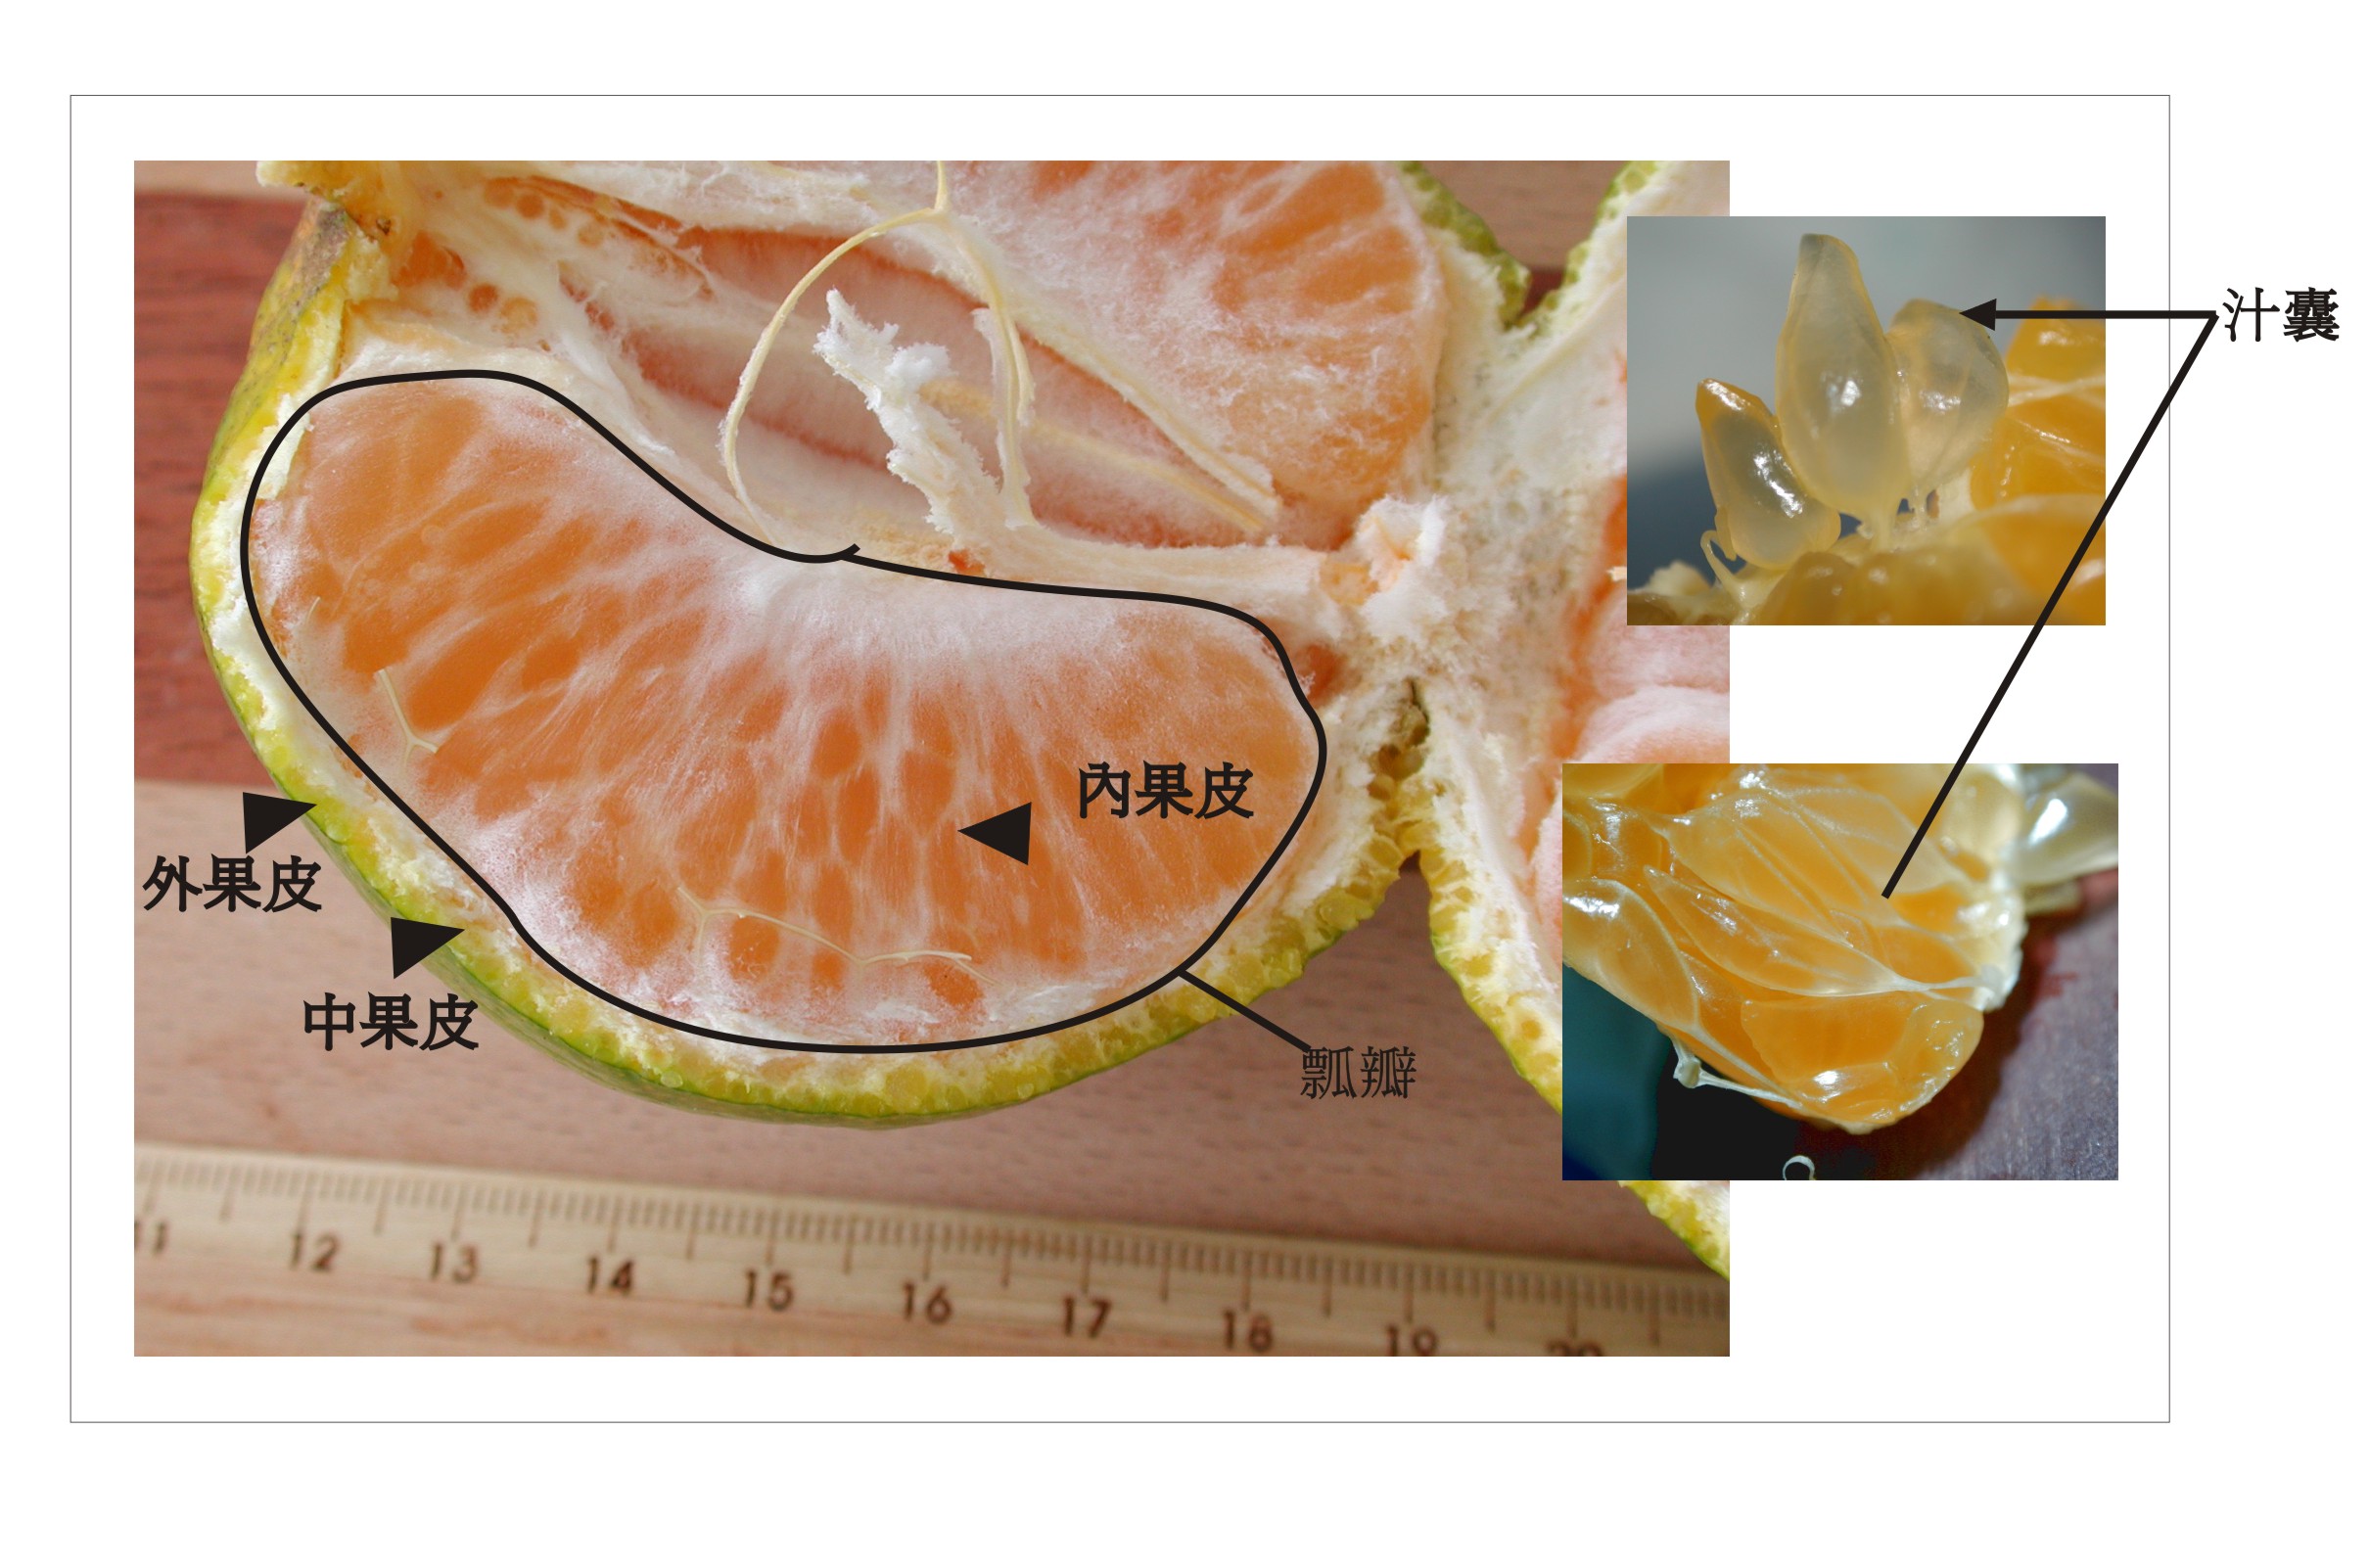 橘子的外部结构分析图图片